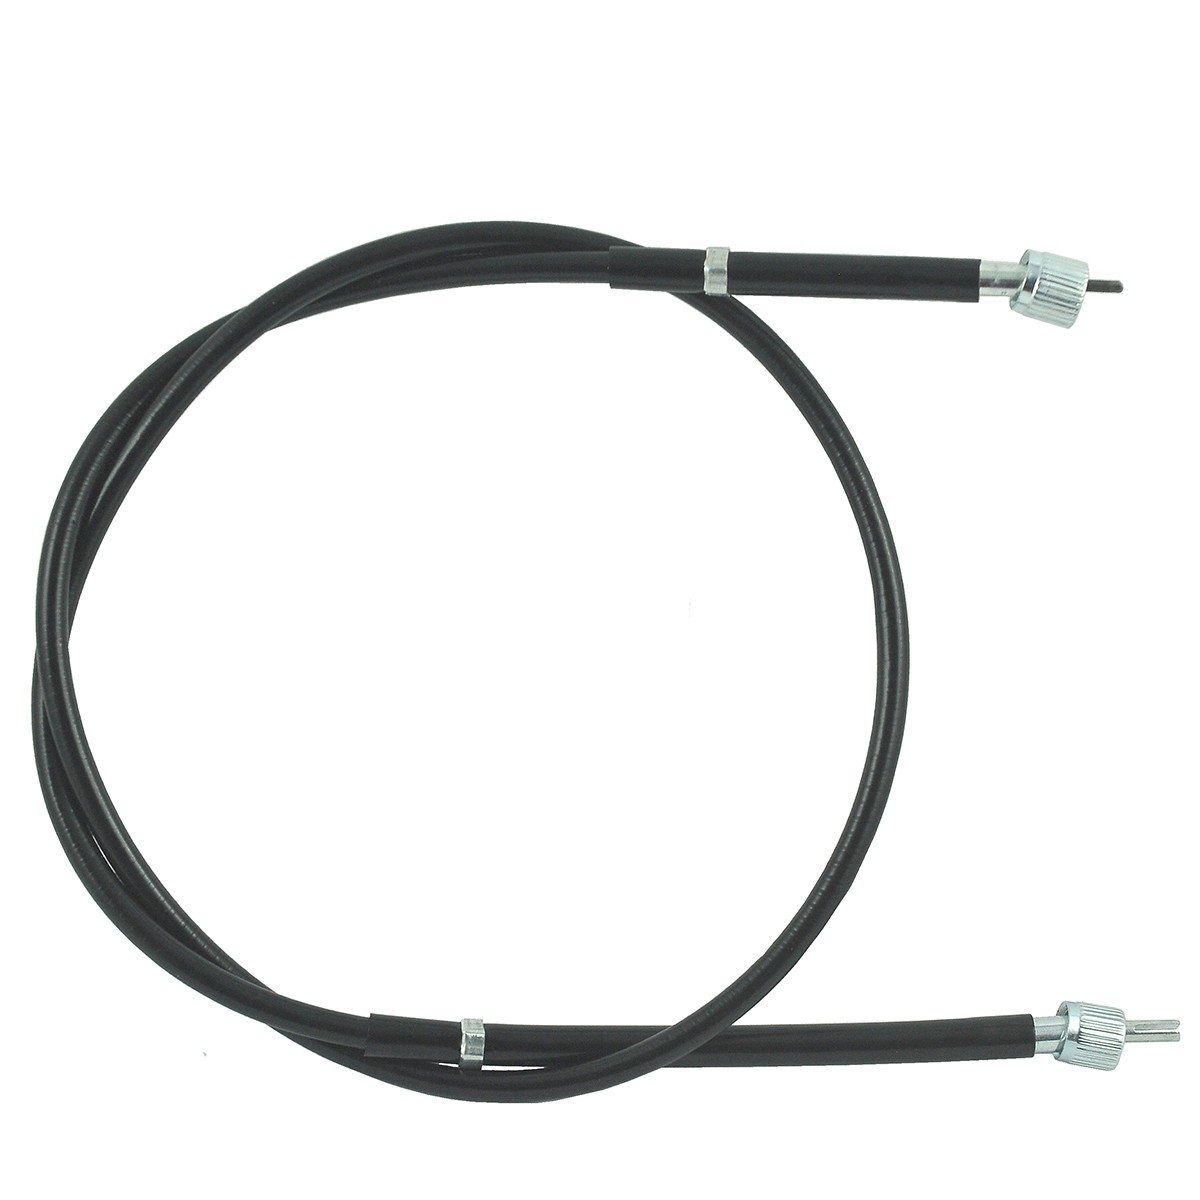 Cable contador / 1445 mm / Kubota L3600/L4200/L4310/L4508/L4610 / TA040-30610 / W9501-45001 / 5-25-123-14